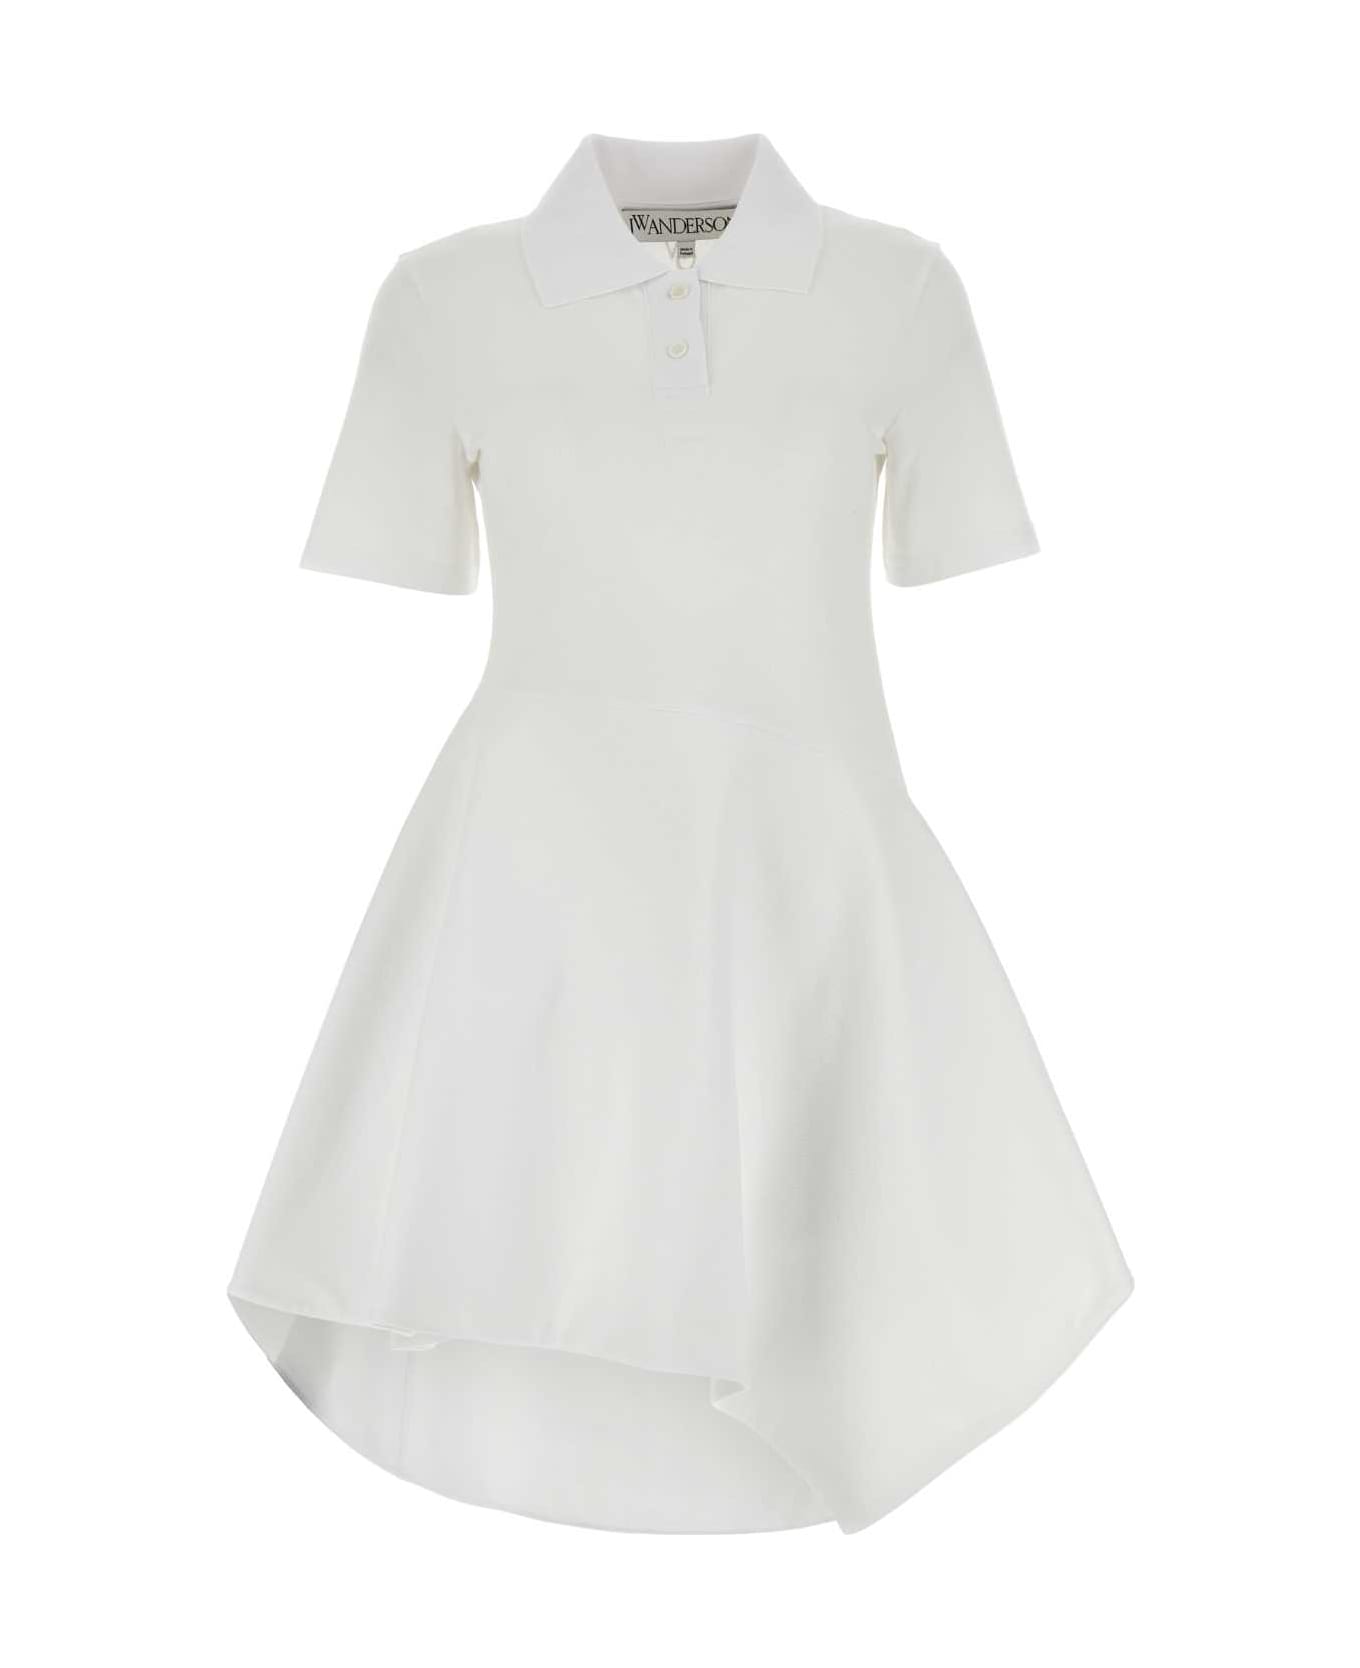 J.W. Anderson White Piquet Polo Dress - White